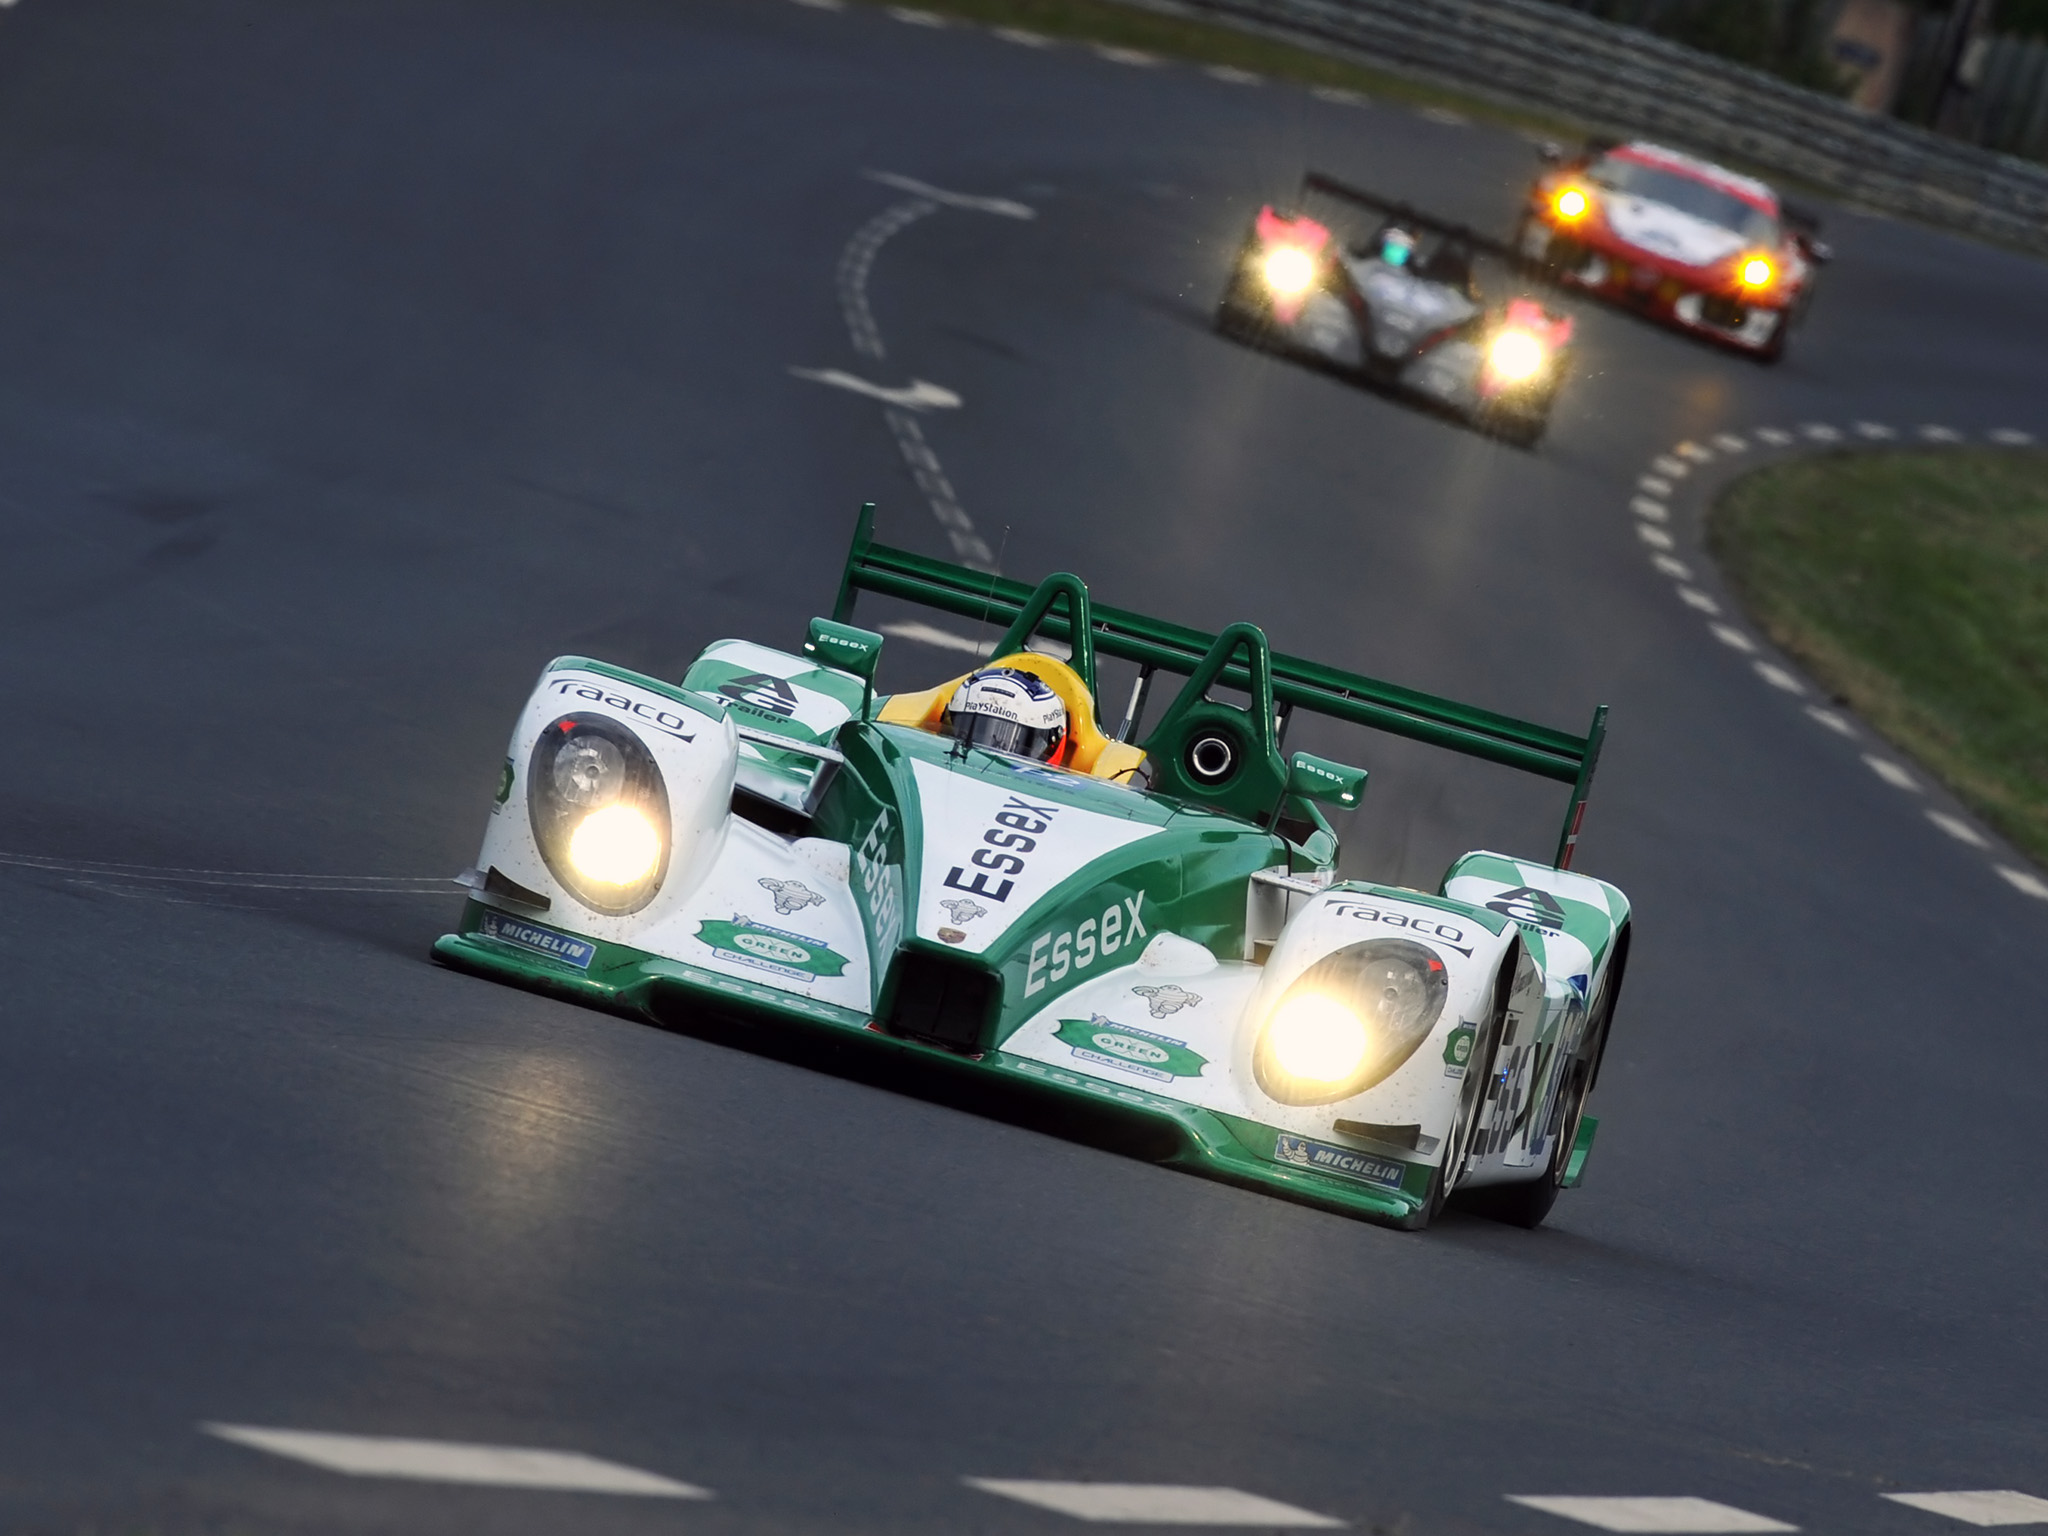 2008, Porsche, R s, Spyder, Lmp2, Le mans, Race, Racing, Hd Wallpaper